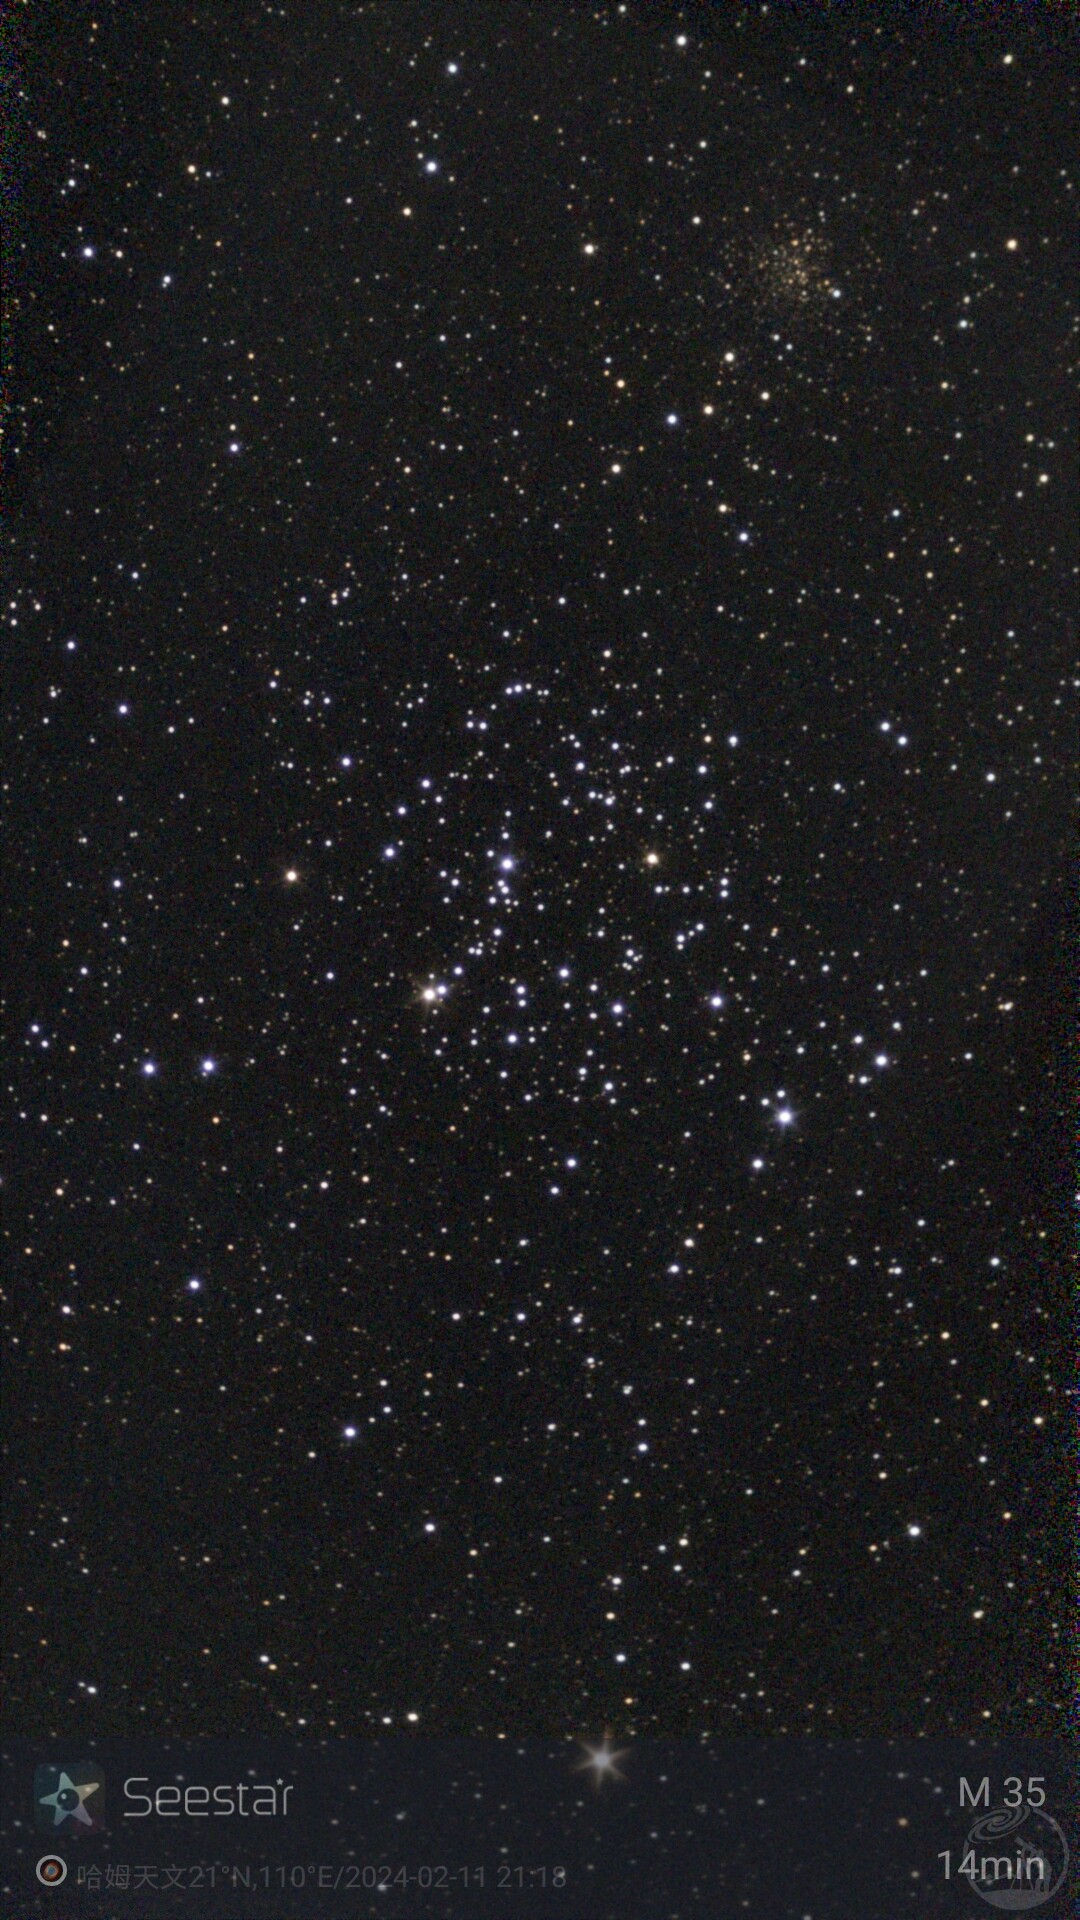 Seestar S50城市深空系列:M81、M82、狮子座三重奏星系，马卡良星系，M35星图，M45